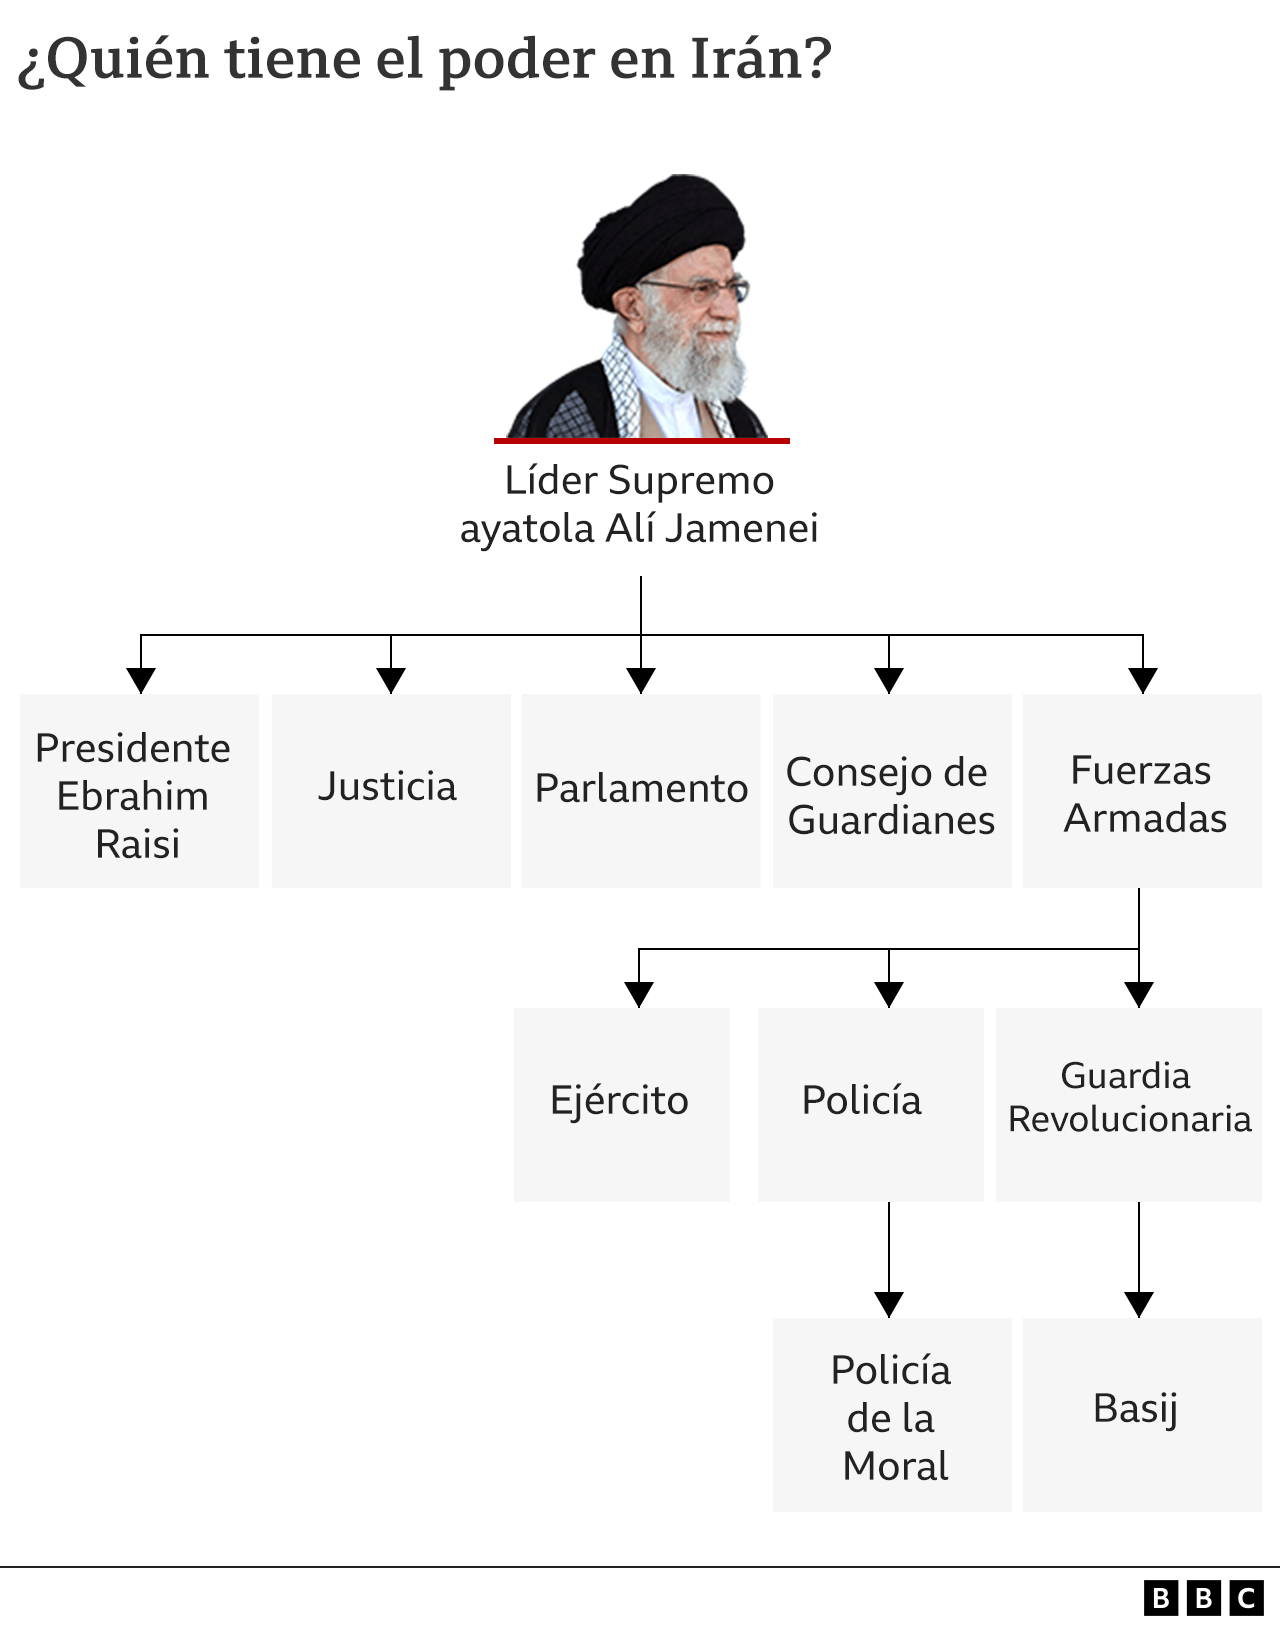 Estructura de poder en Irán